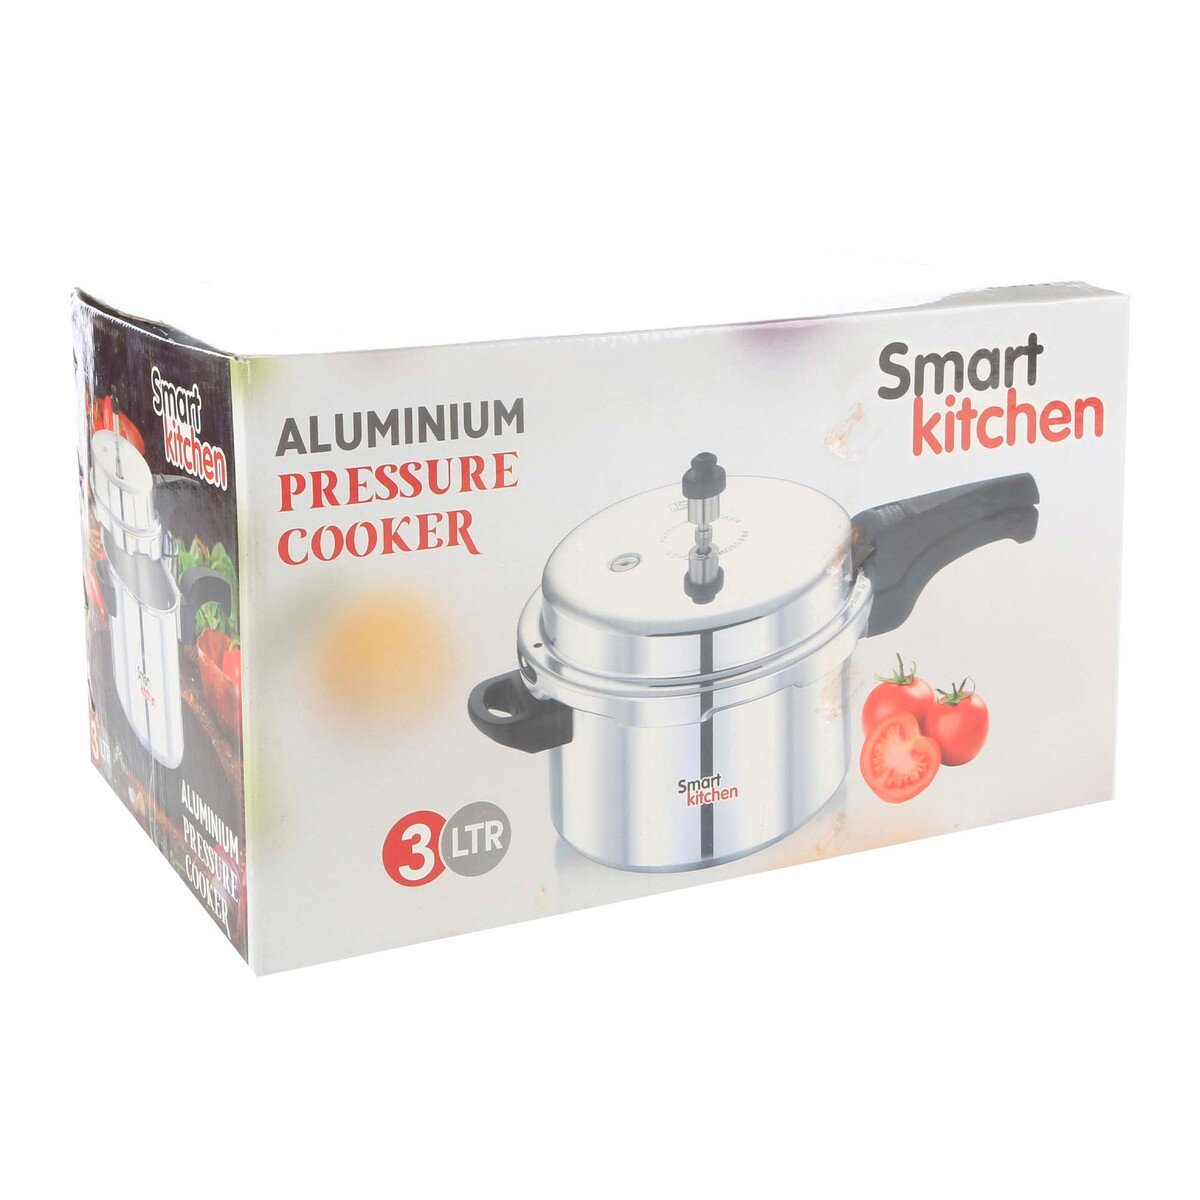 Smart Kitchen Aluminium Pressure Cooker 3Ltr MK3L